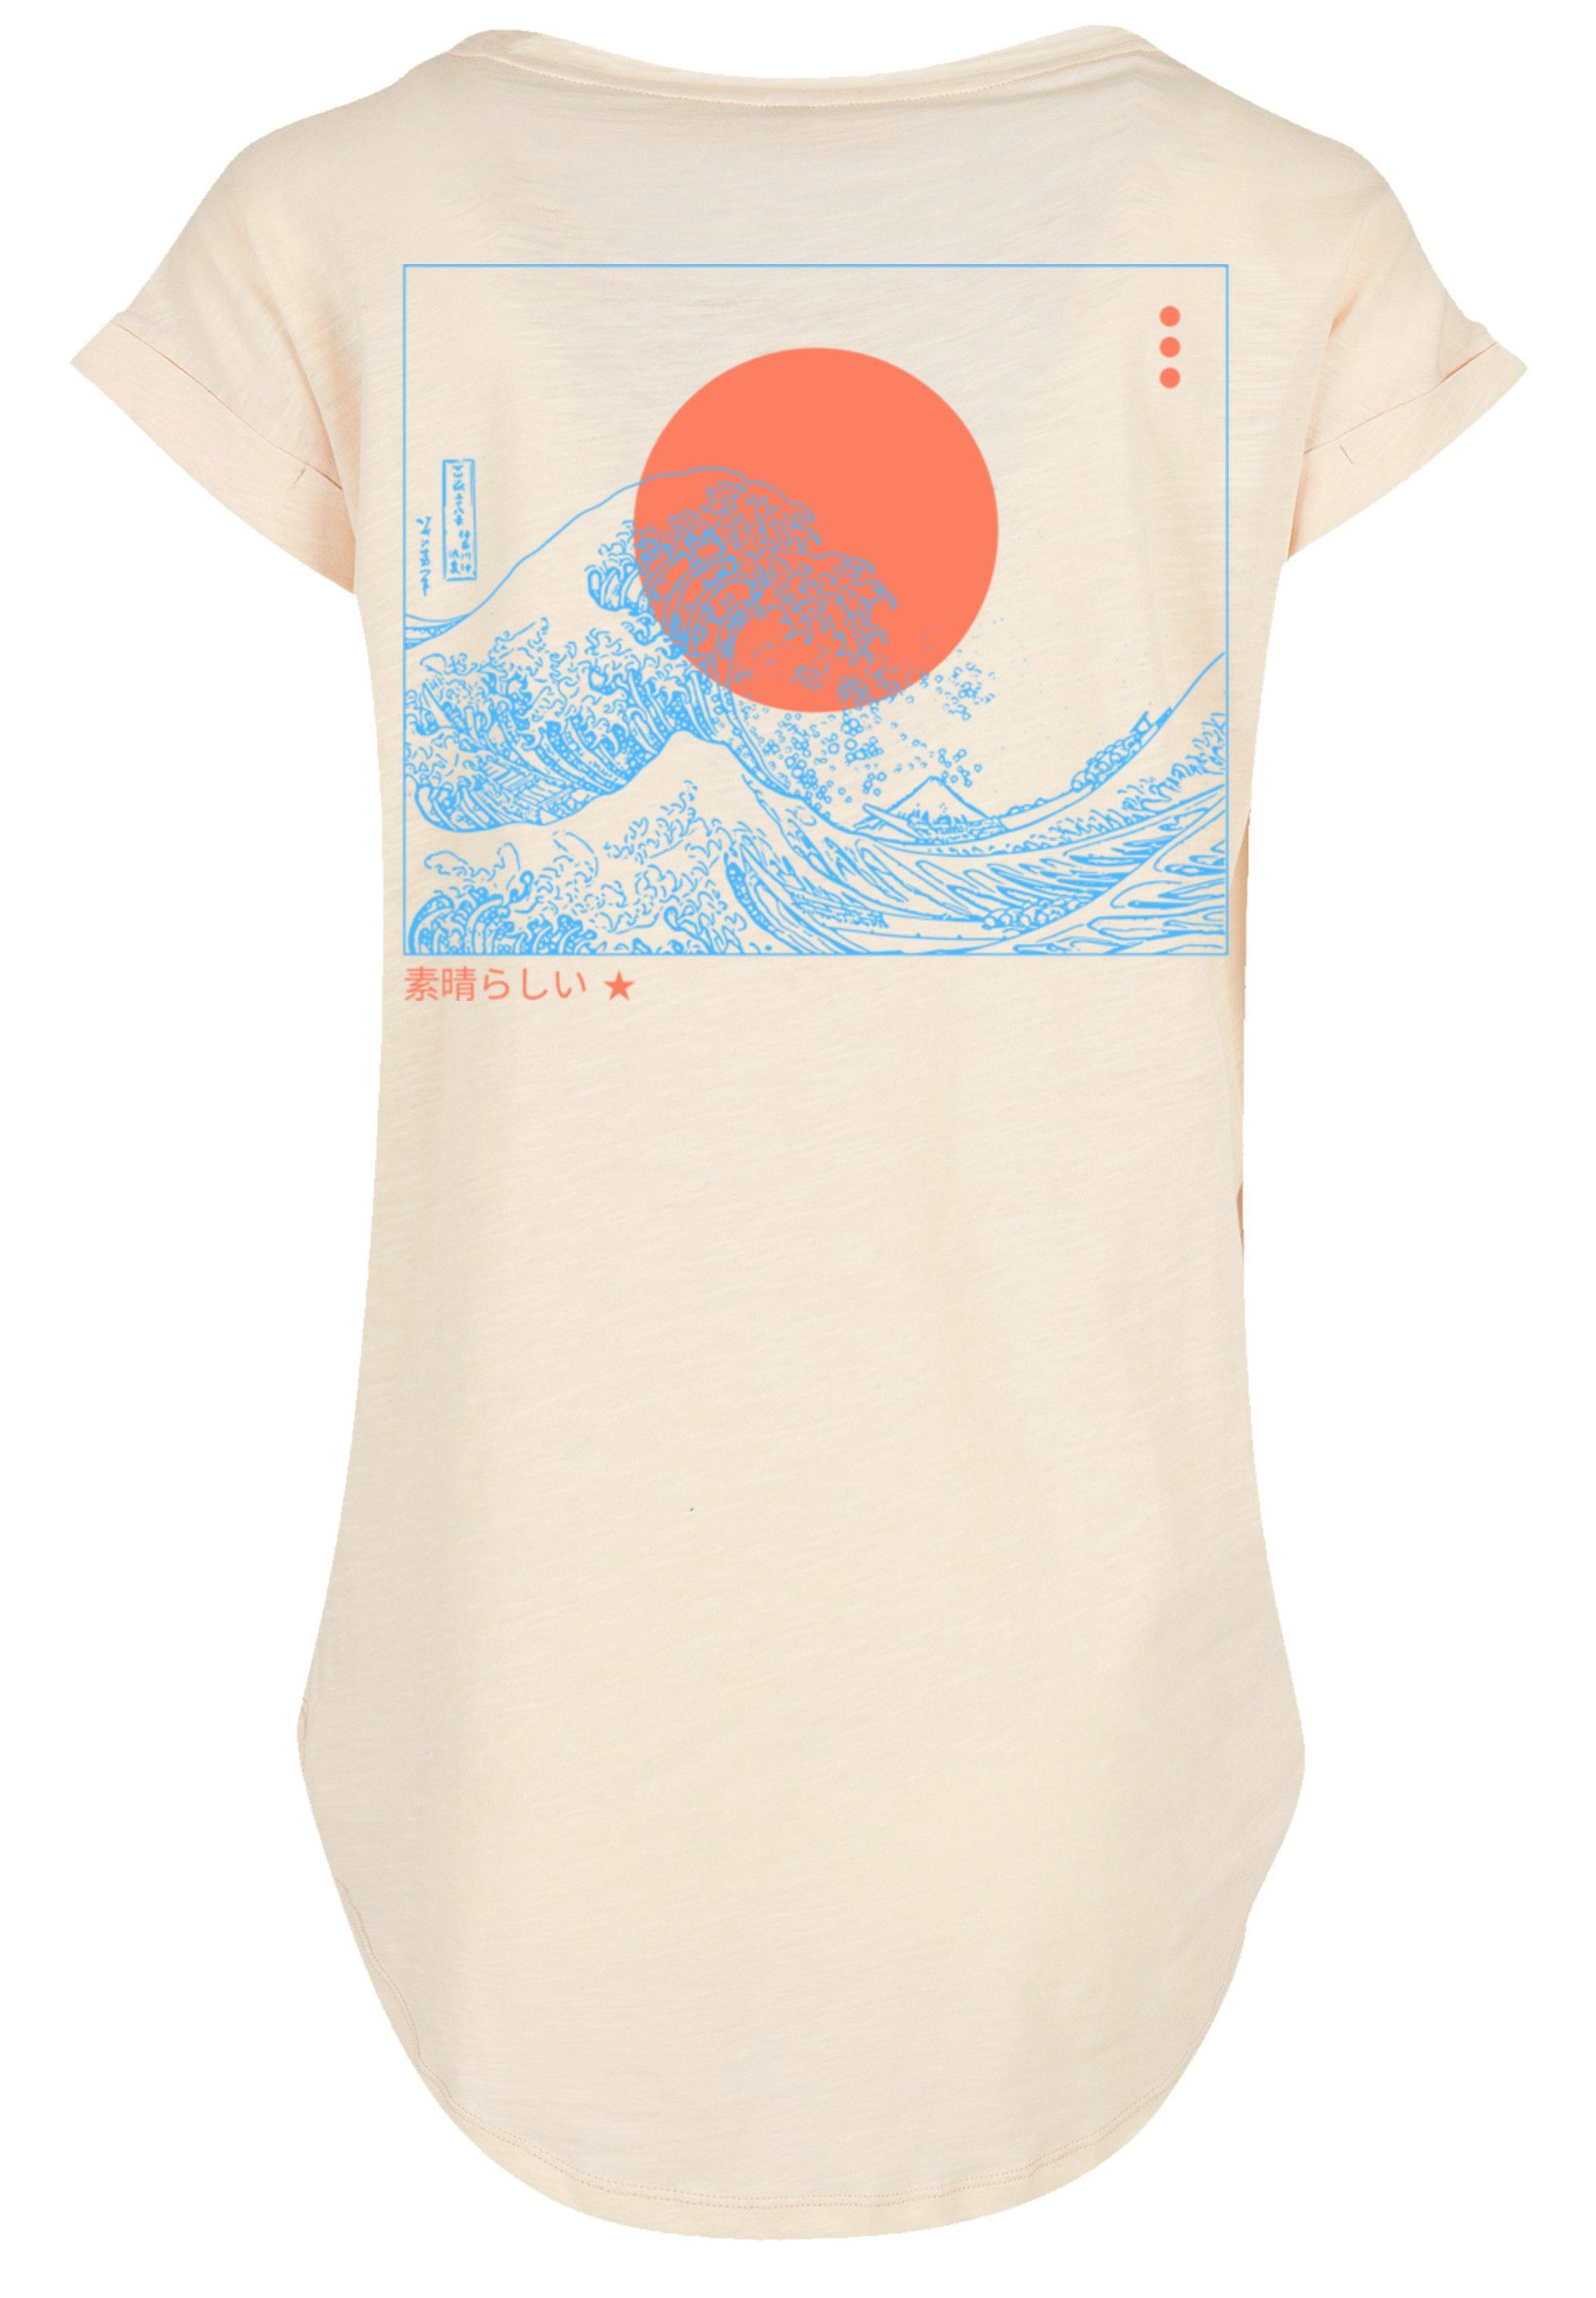 mit Kanagawa hohem Welle Print, Tragekomfort PLUS SIZE F4NT4STIC T-Shirt weicher Sehr Baumwollstoff